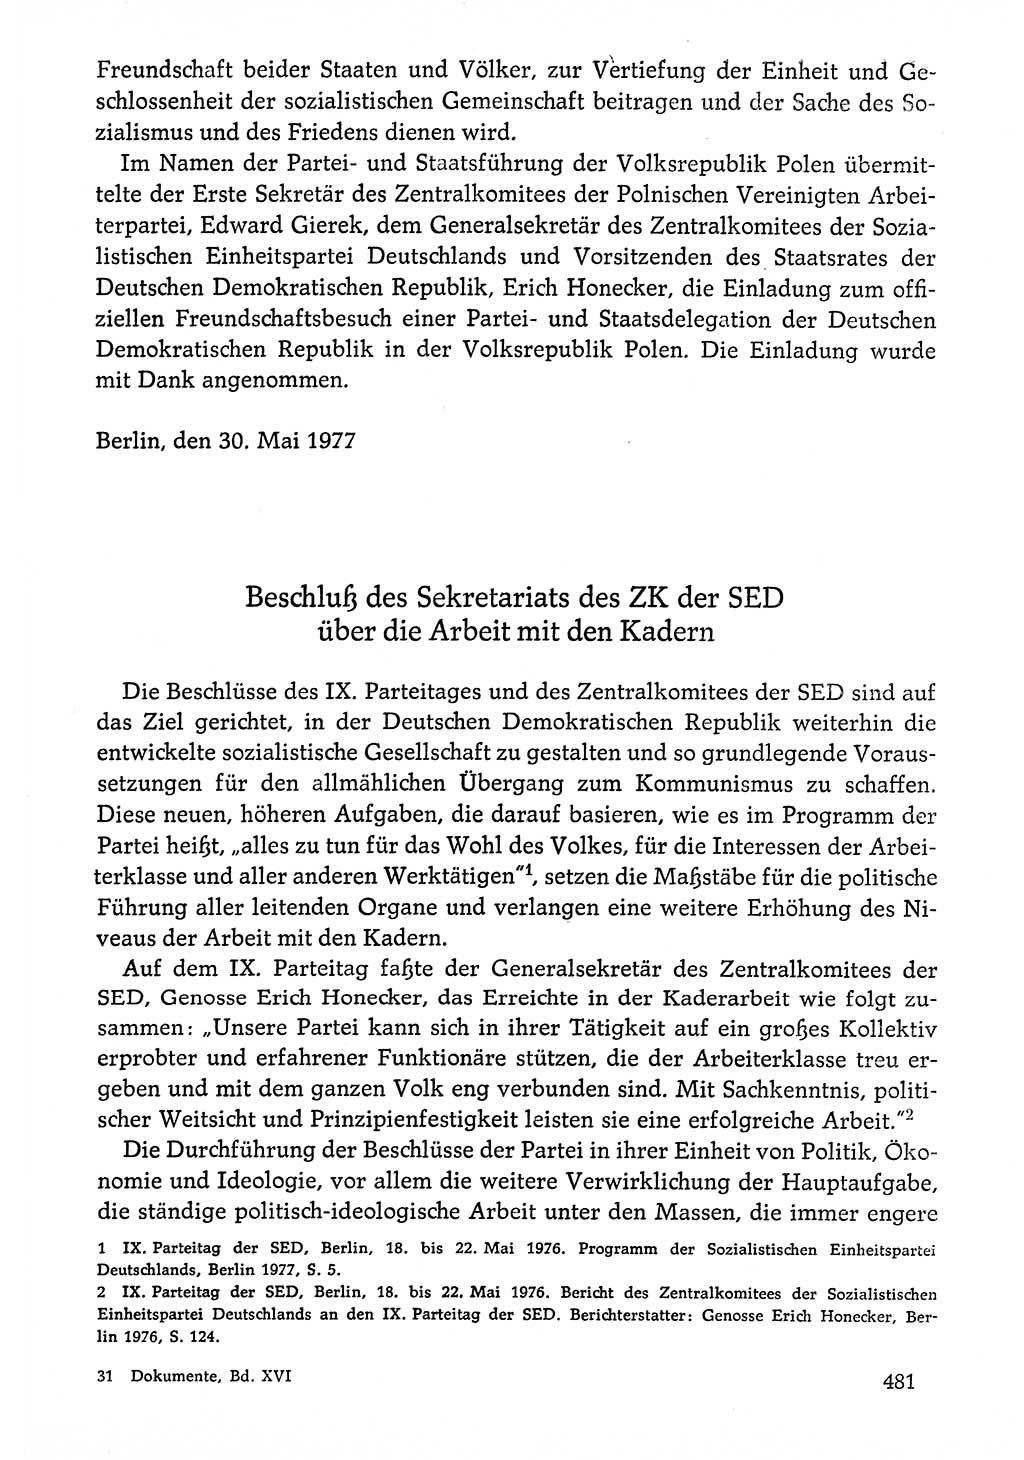 Dokumente der Sozialistischen Einheitspartei Deutschlands (SED) [Deutsche Demokratische Republik (DDR)] 1976-1977, Seite 481 (Dok. SED DDR 1976-1977, S. 481)